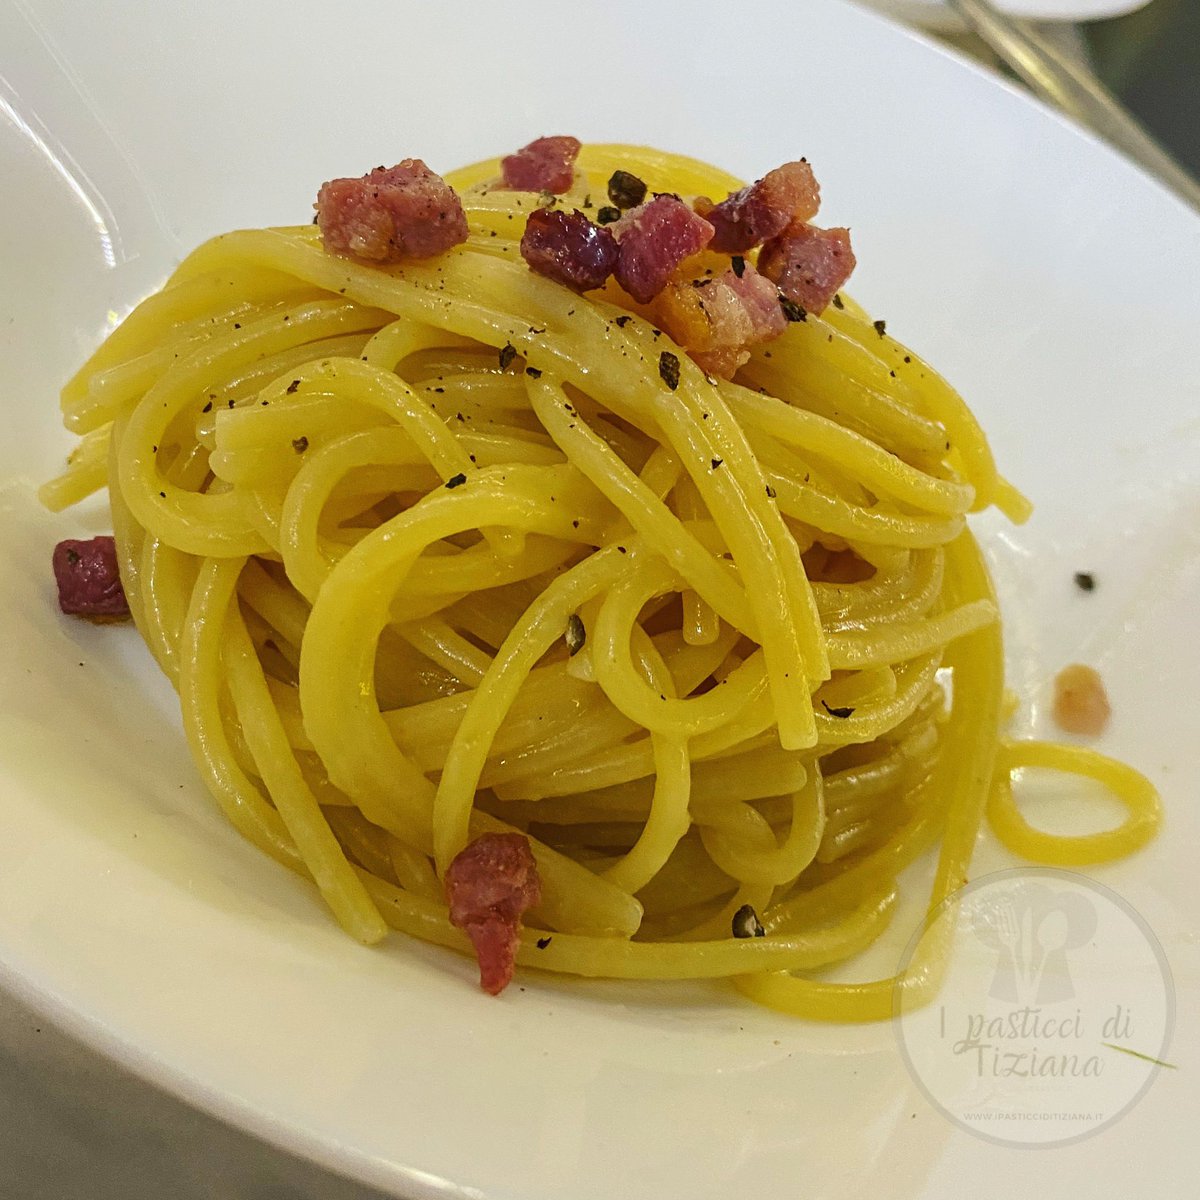 Spaghetti alla gricia. Guanciale, pecorino e pepe. blog.giallozafferano.it/ipasticciditiz… #pastaallagricia #primipiatti #primipiattiitaliani #ricetteveloci #amocucinare